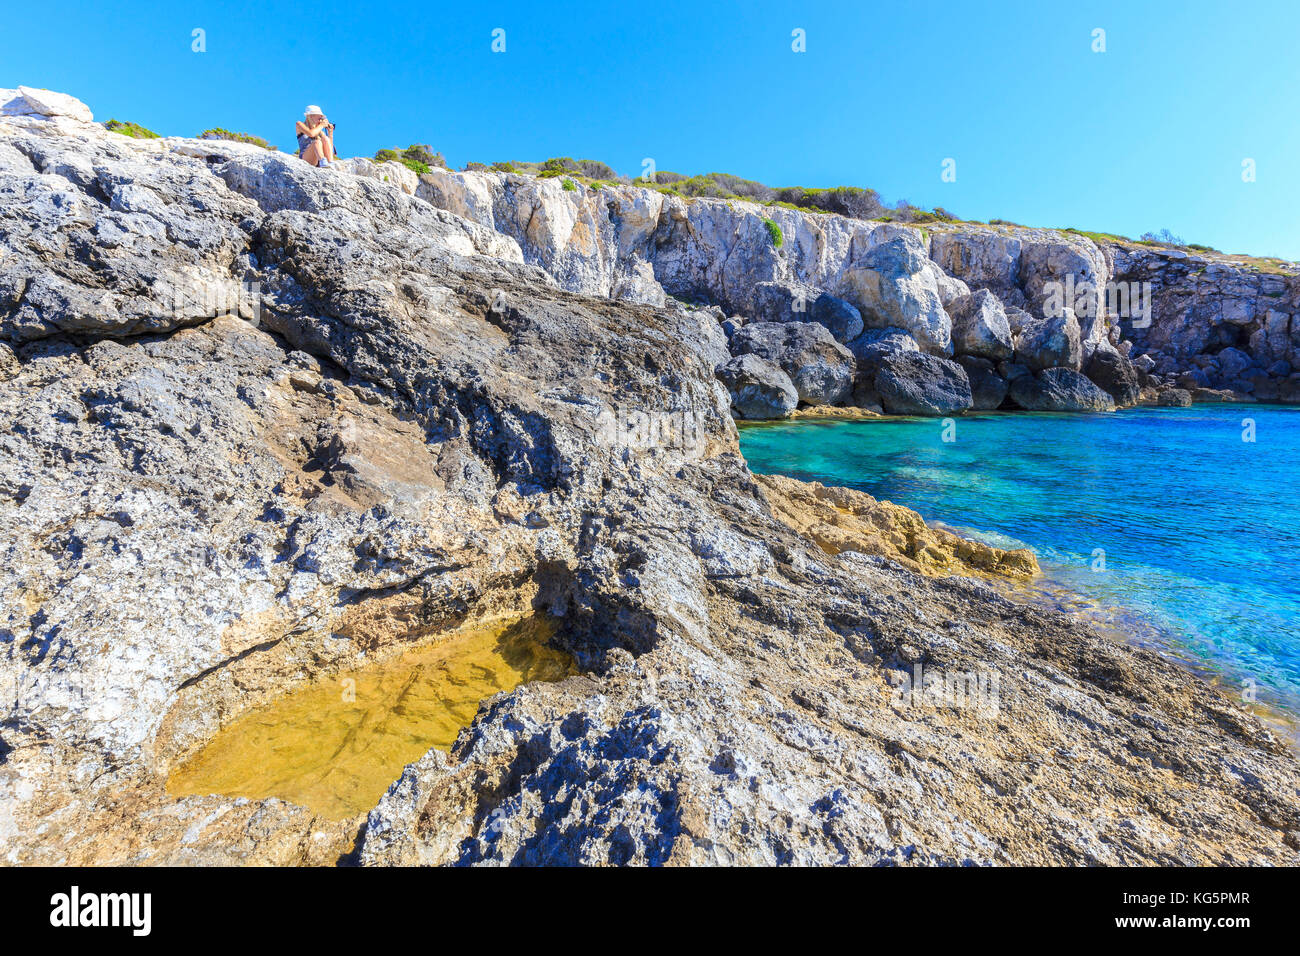 Photographe en action sur les rochers de Cala dei benedettini, îles Tremiti, Foggia, Pouilles, Italie. Banque D'Images